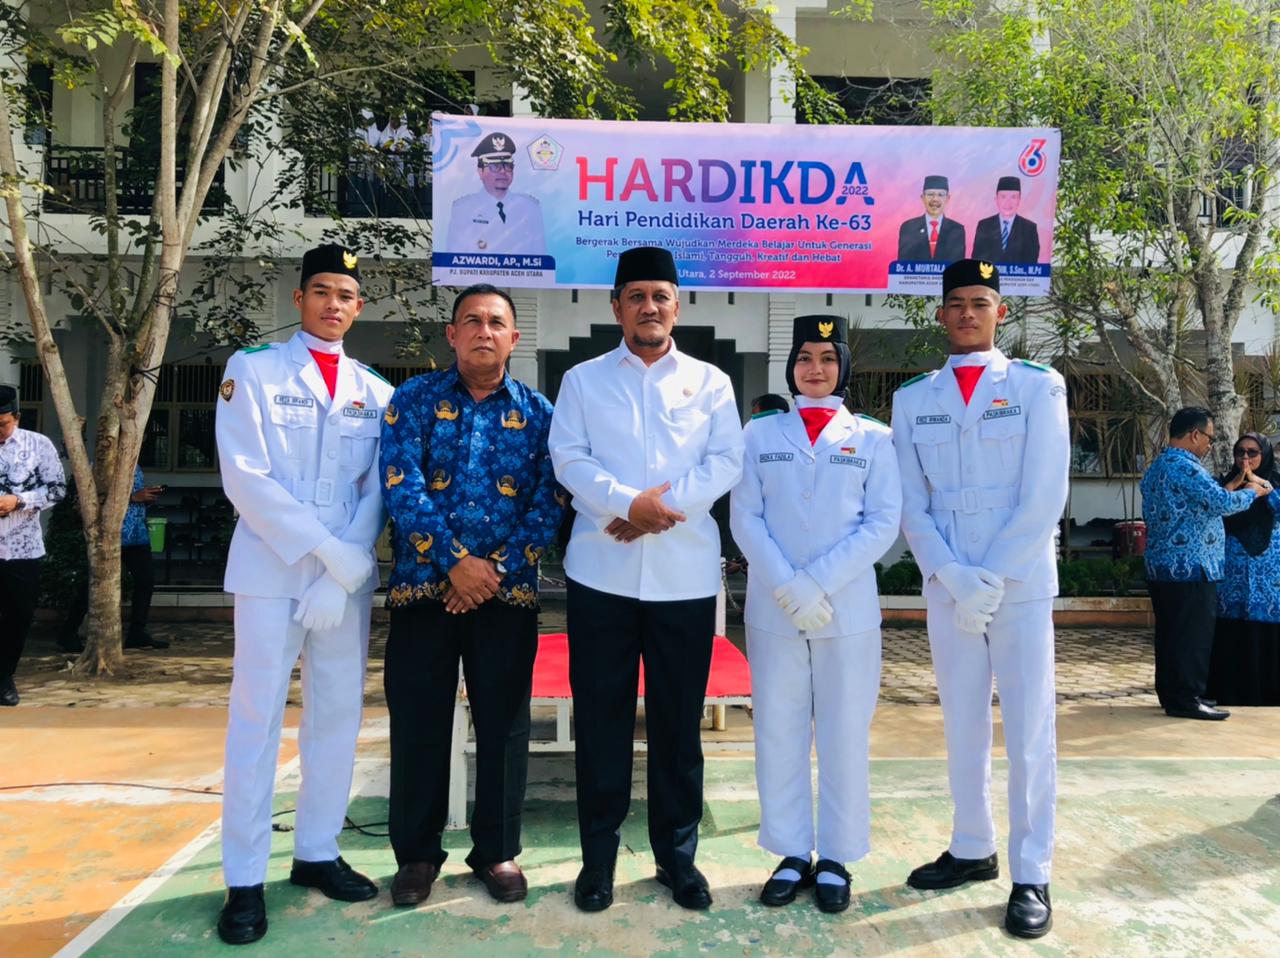 Sederhana Tapi Khidmat, Hardikda ke-63 di Aceh Utara Dipimpin Asisten I